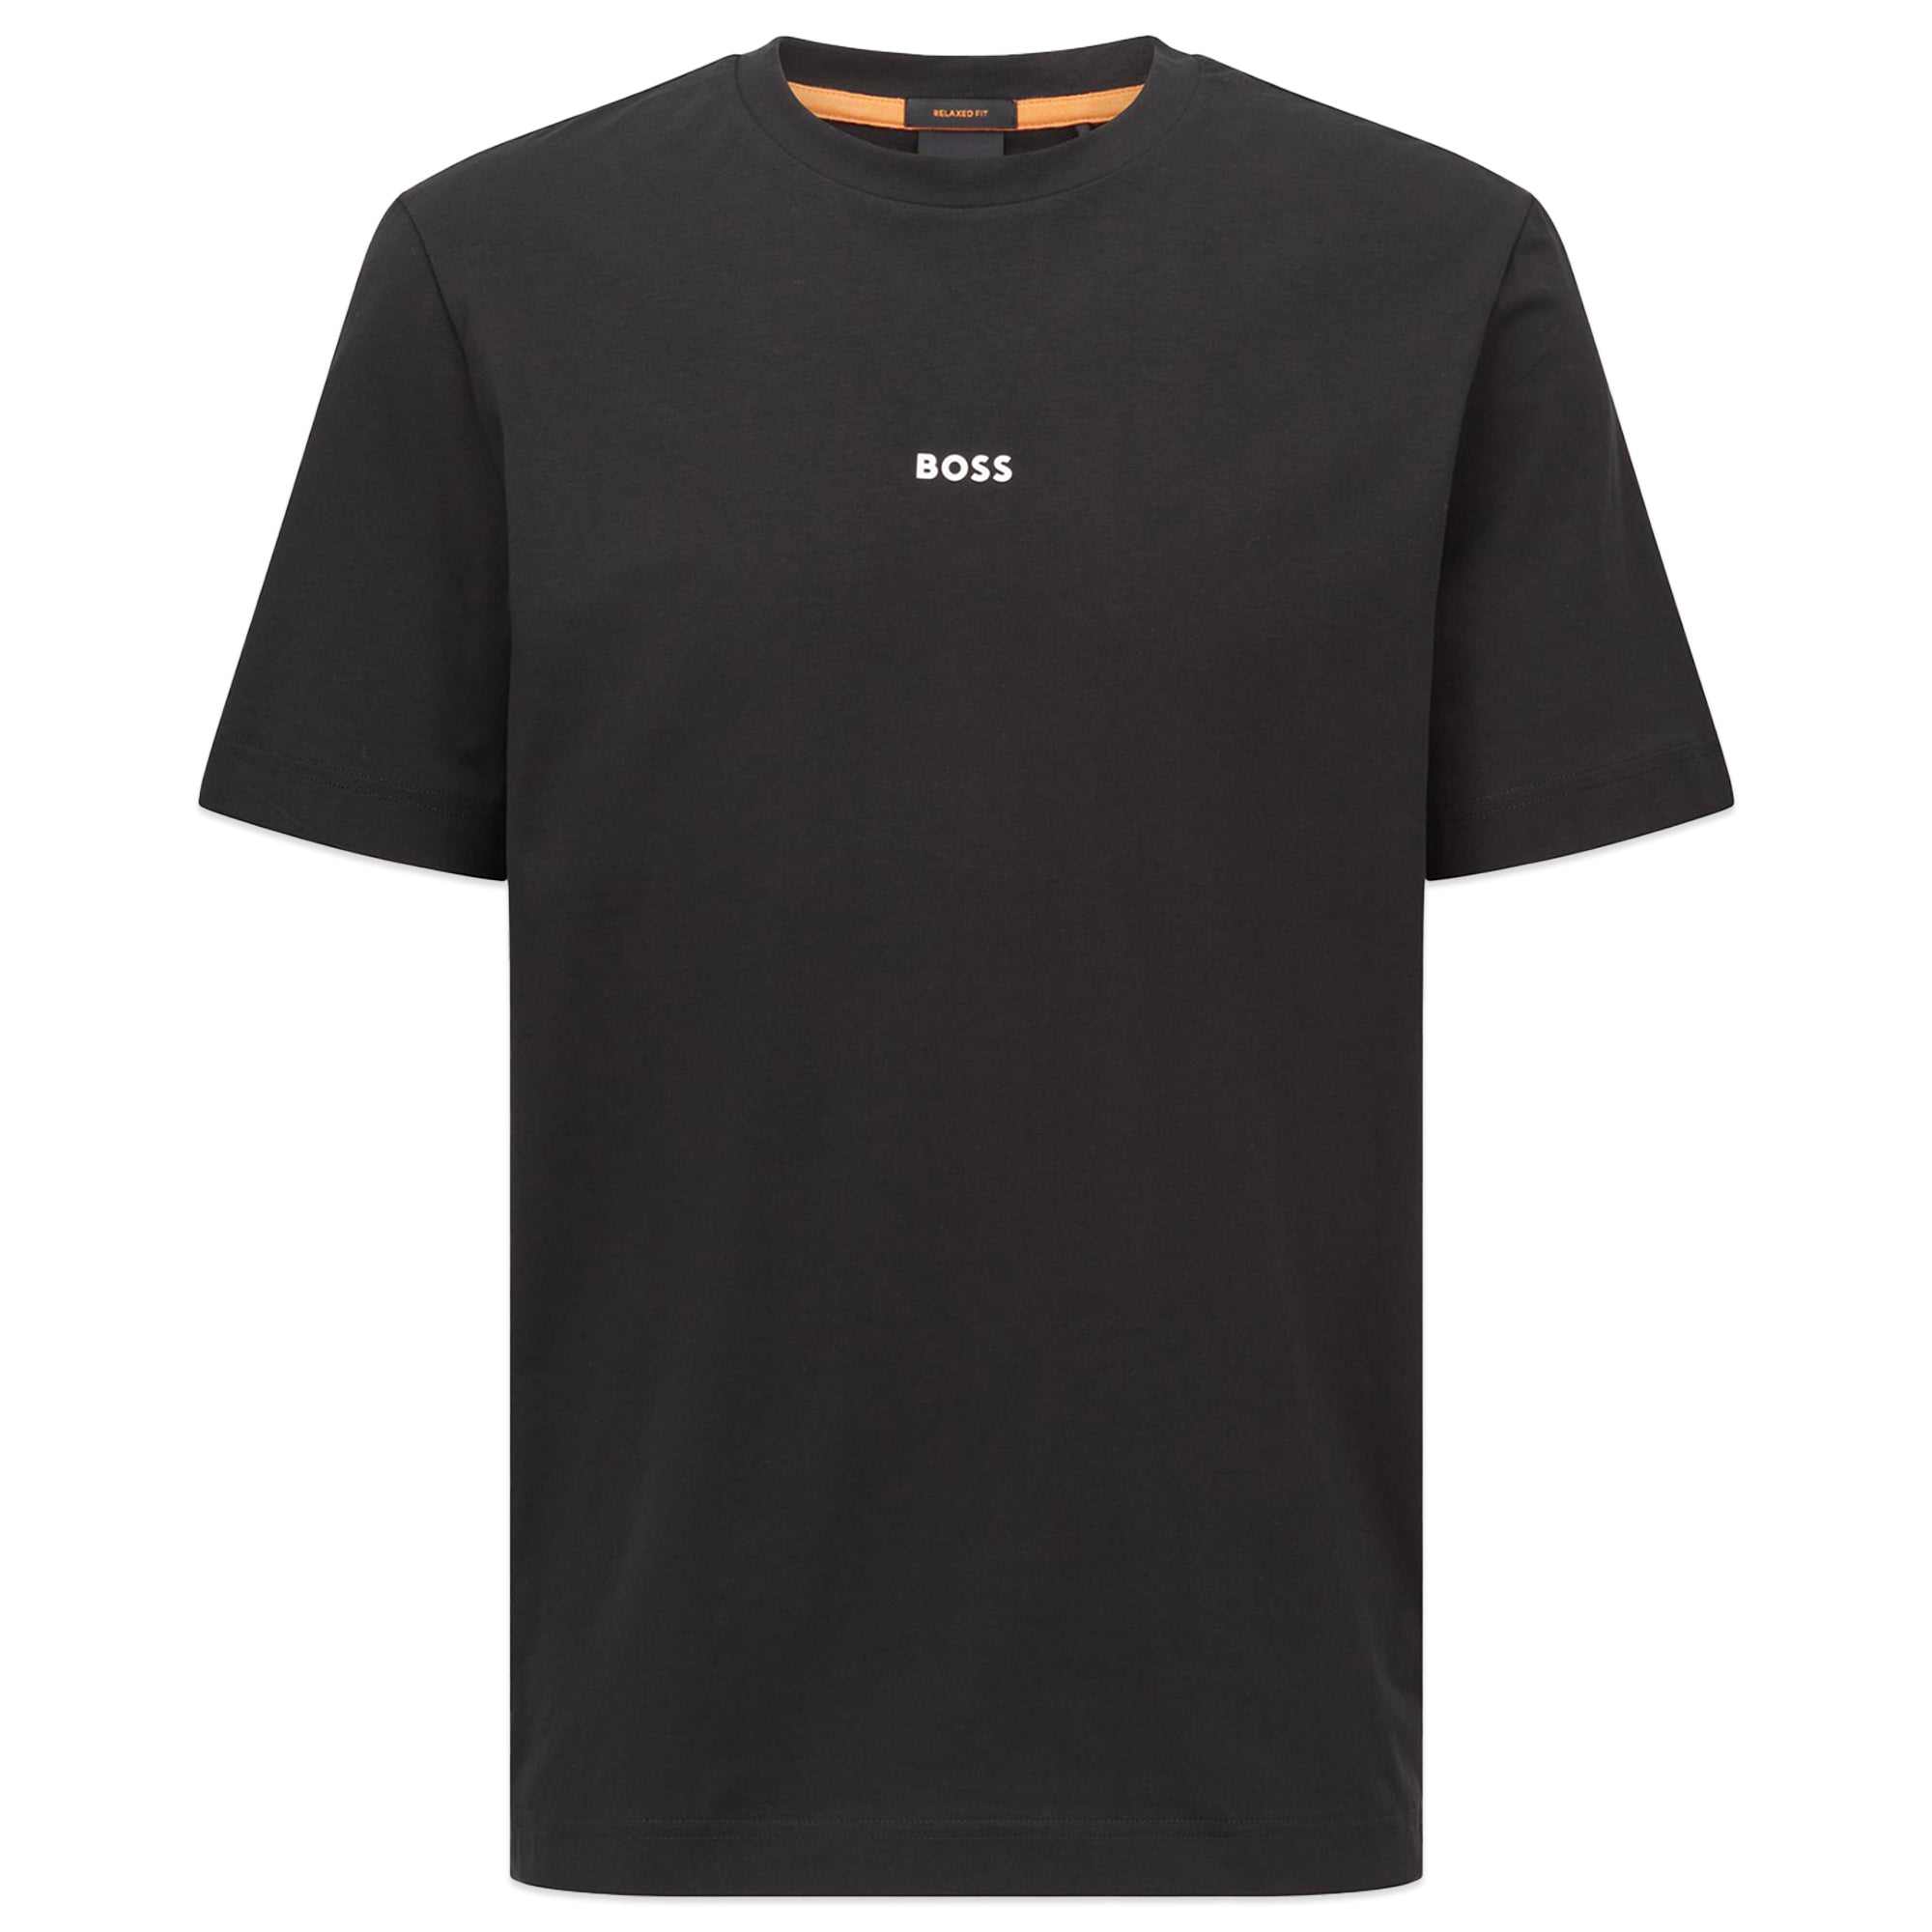 Boss TChup T-Shirt - Black